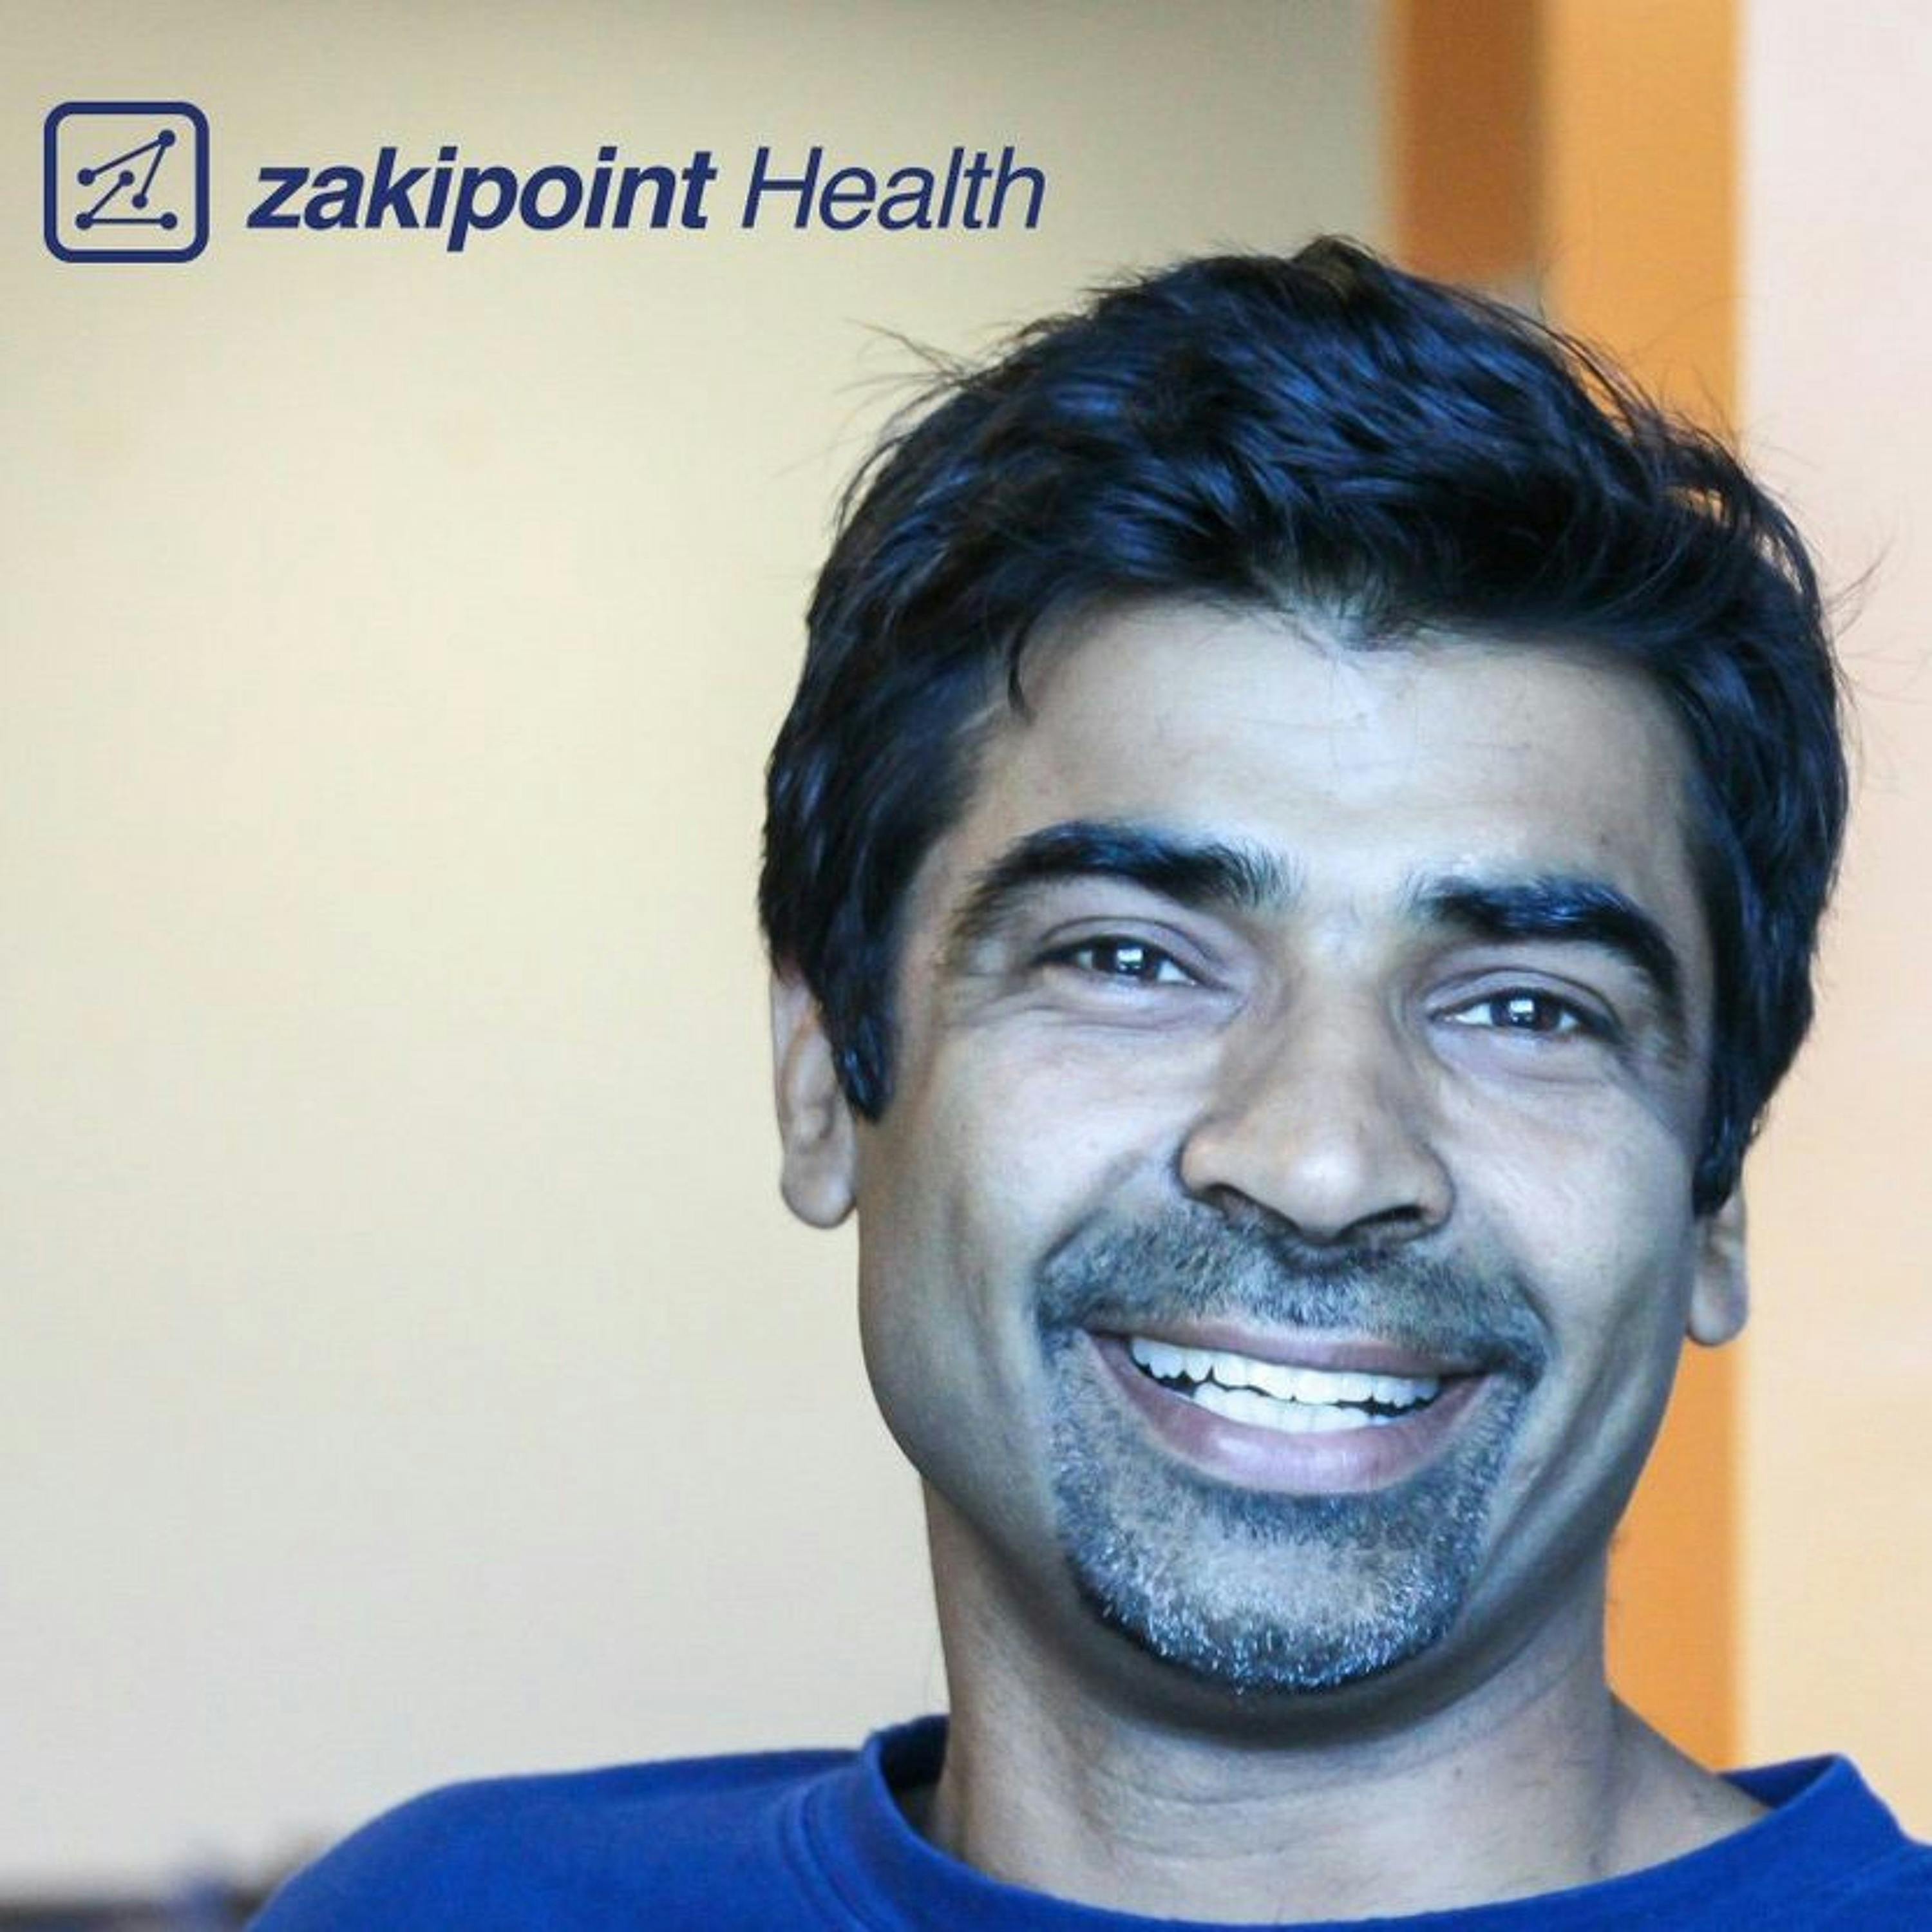 Ep. 40: ZakiPoint Health (MassChallenge HealthTech Participant)– Ramesh Kumar, CEO and Founder